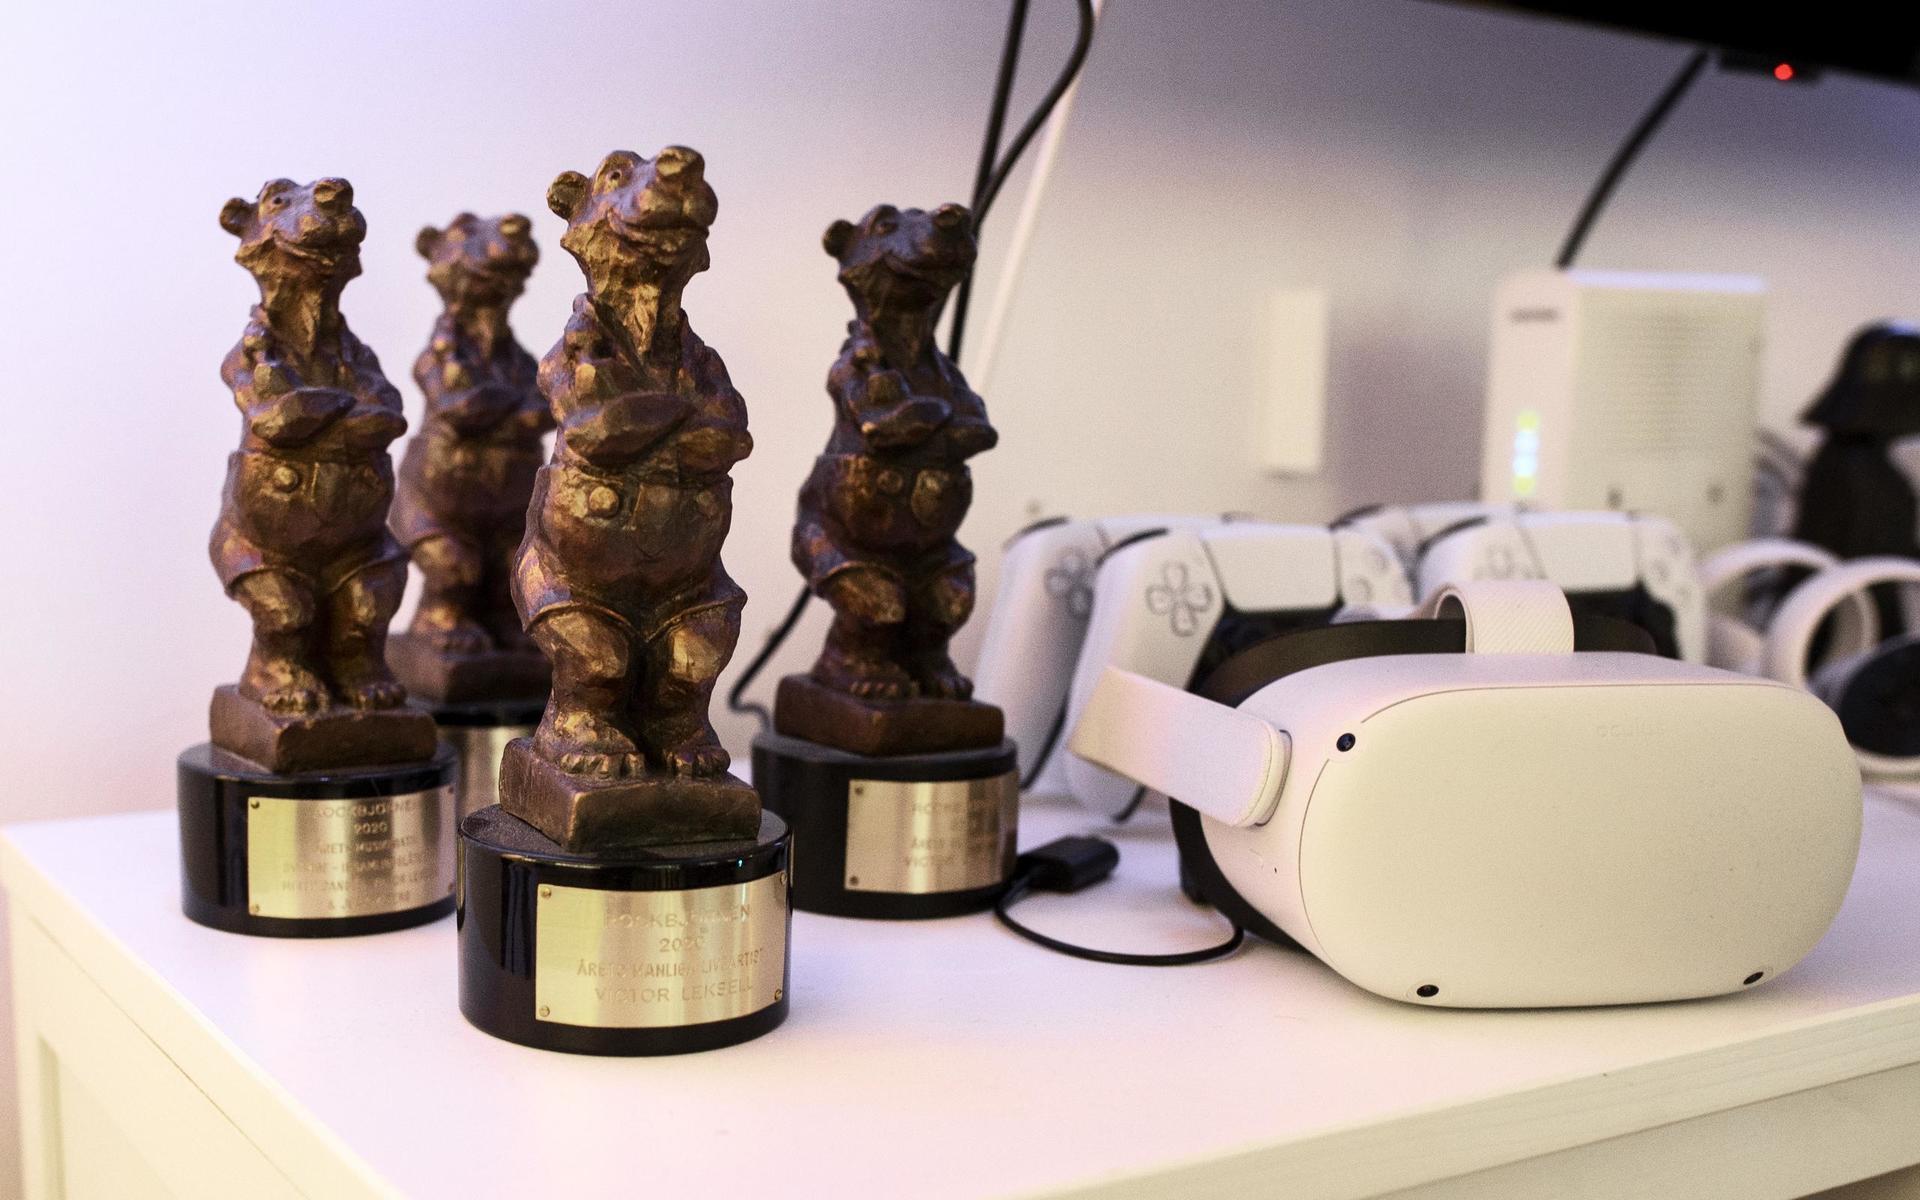 Bredvid Playstation-kontrollerna står fyra Rockbjörnar, där Leksell bland annat vann pris för årets manliga liveartist årets låt för ”Svag” 2020.